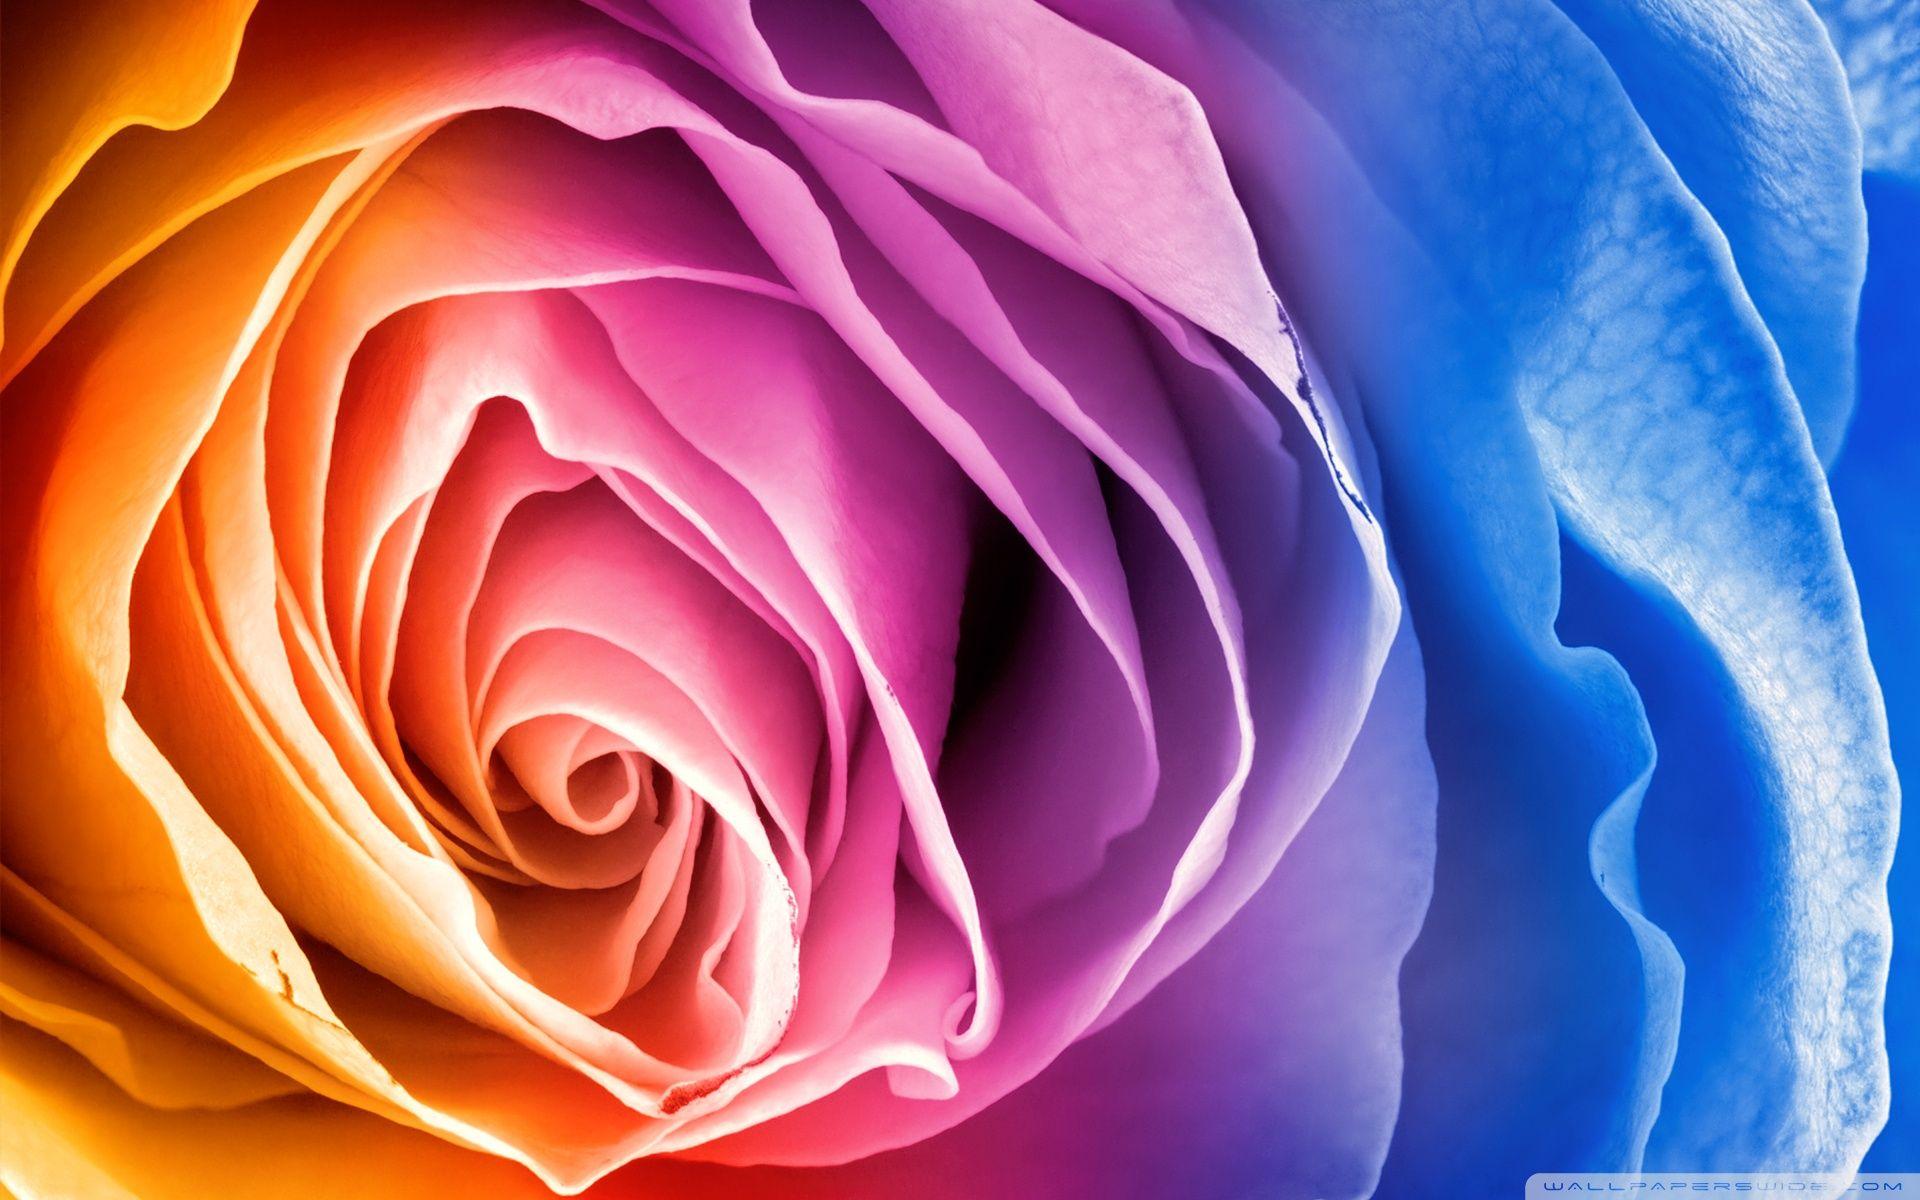 Rainbow Rose ❤ 4K HD Desktop Wallpaper for 4K Ultra HD TV • Wide